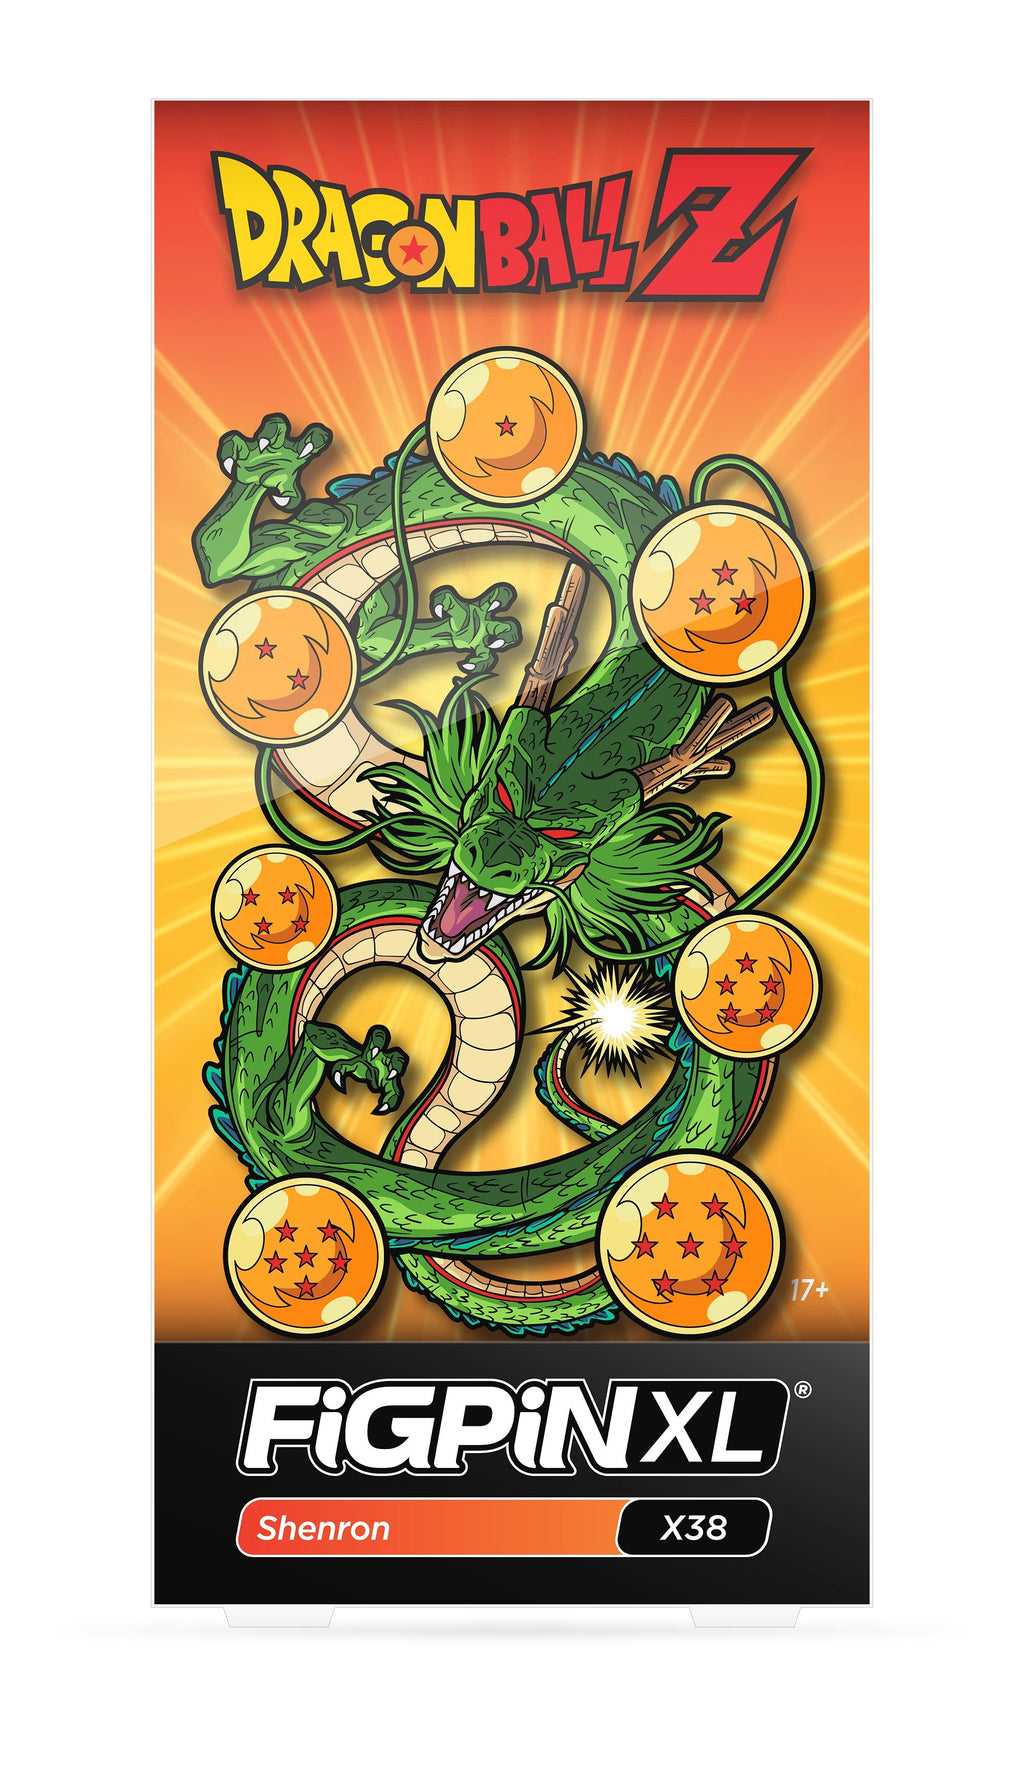 FiGPiN XL Dragon Ball Z SHENRON 6" Enamel Pin #X38 (1stEd.LotB)